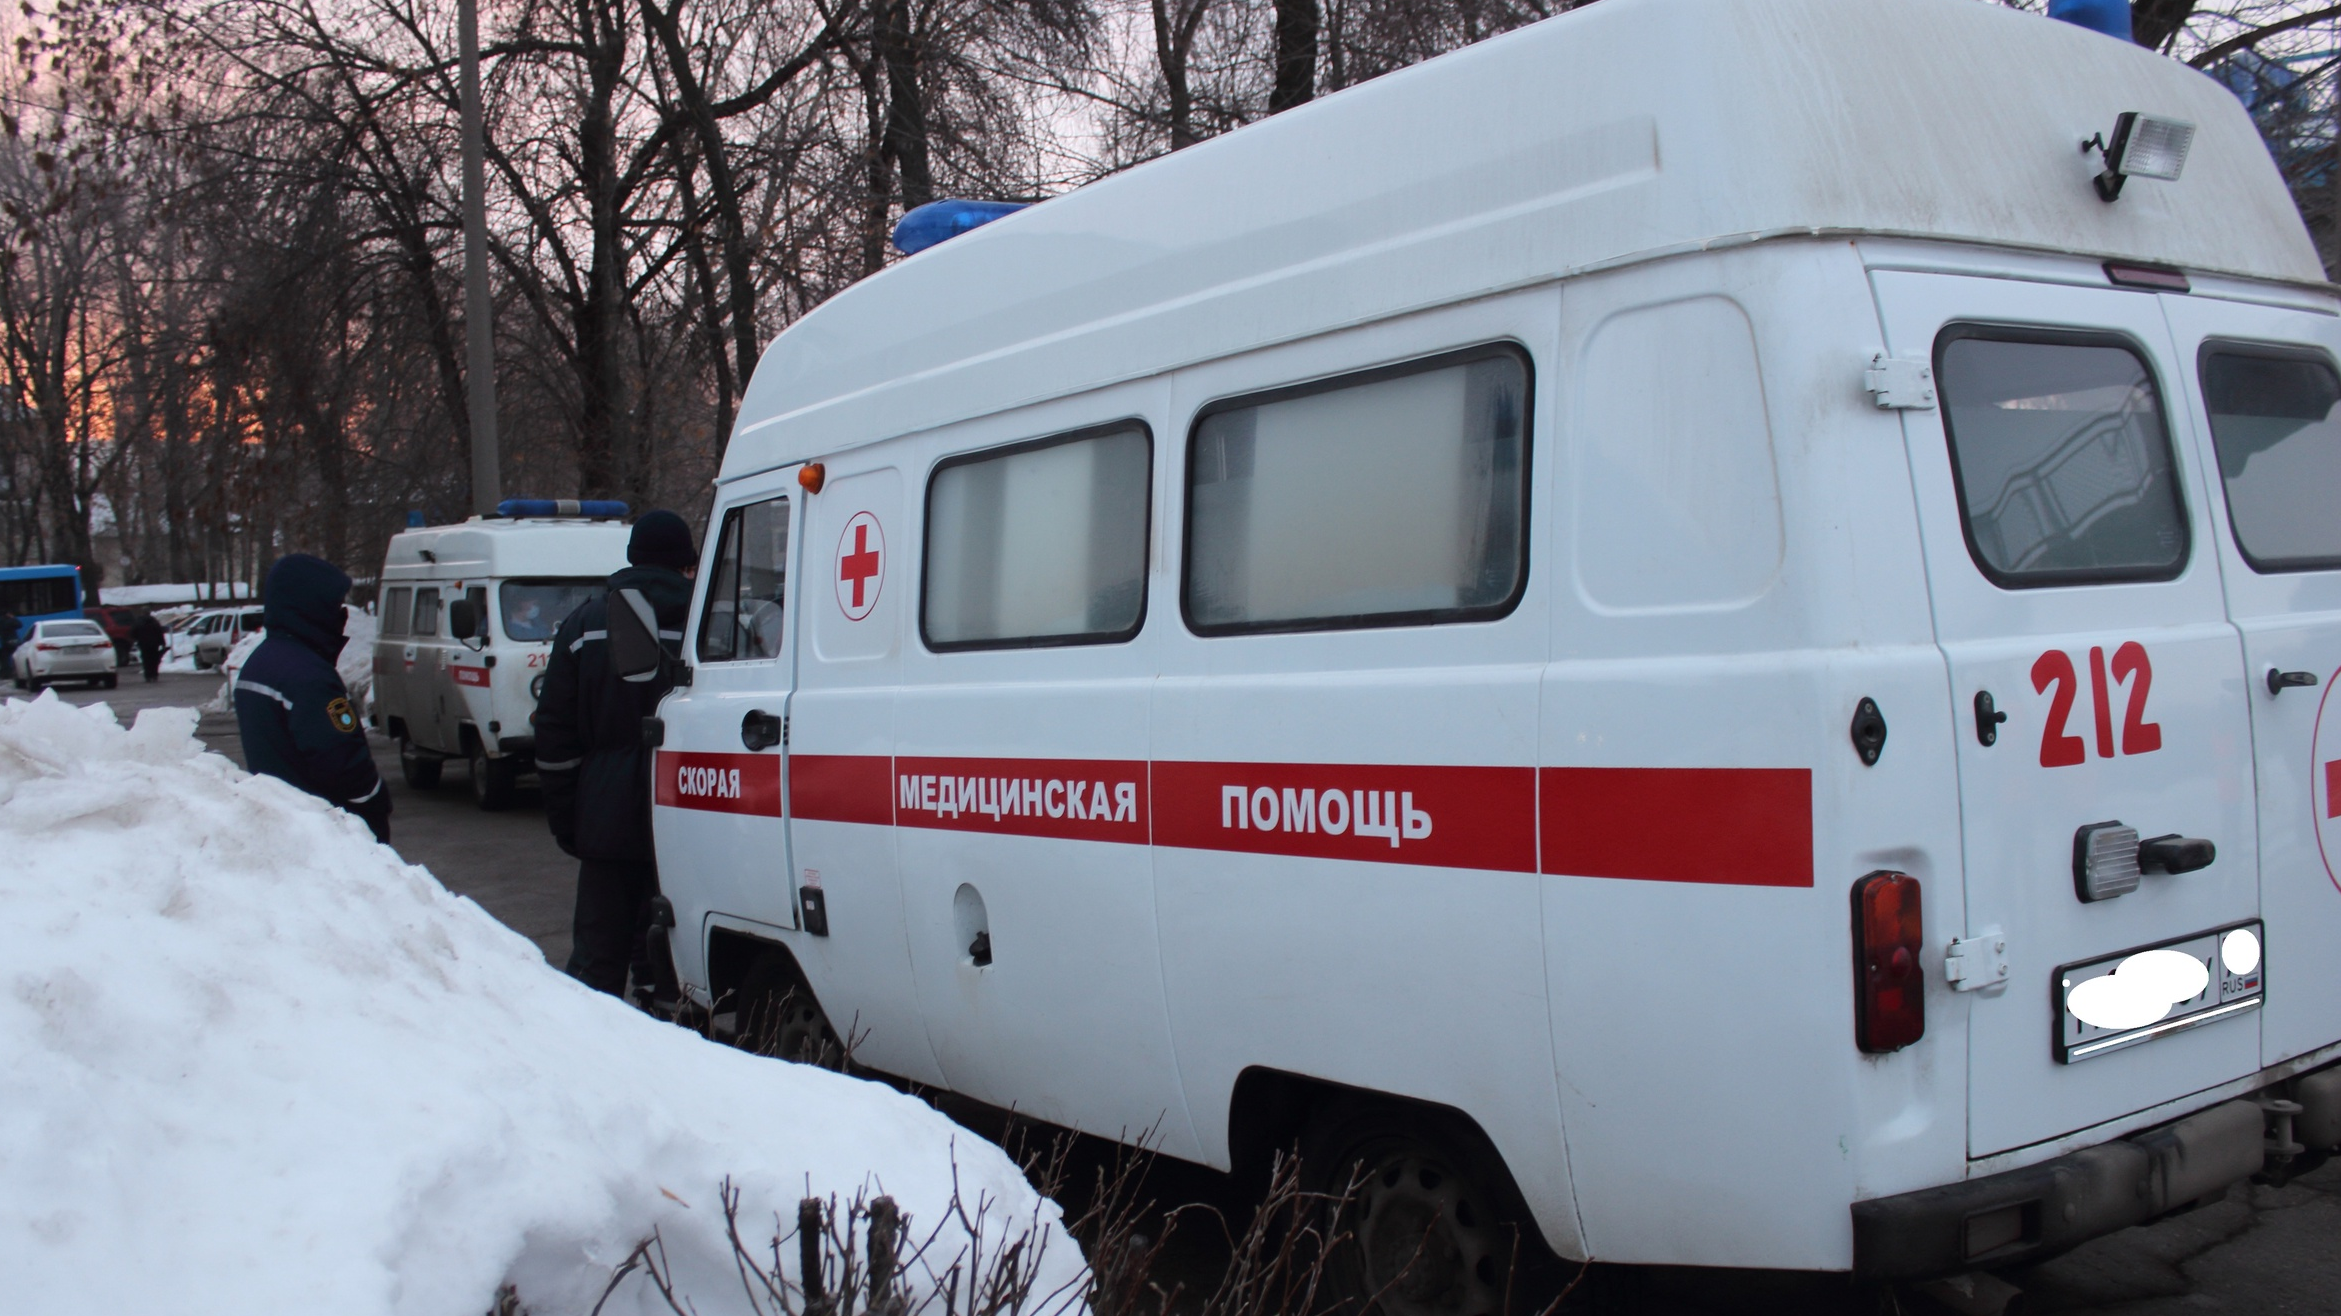 Ульяновские полицейские назвали причину гибели 3 жителей из села Криуши